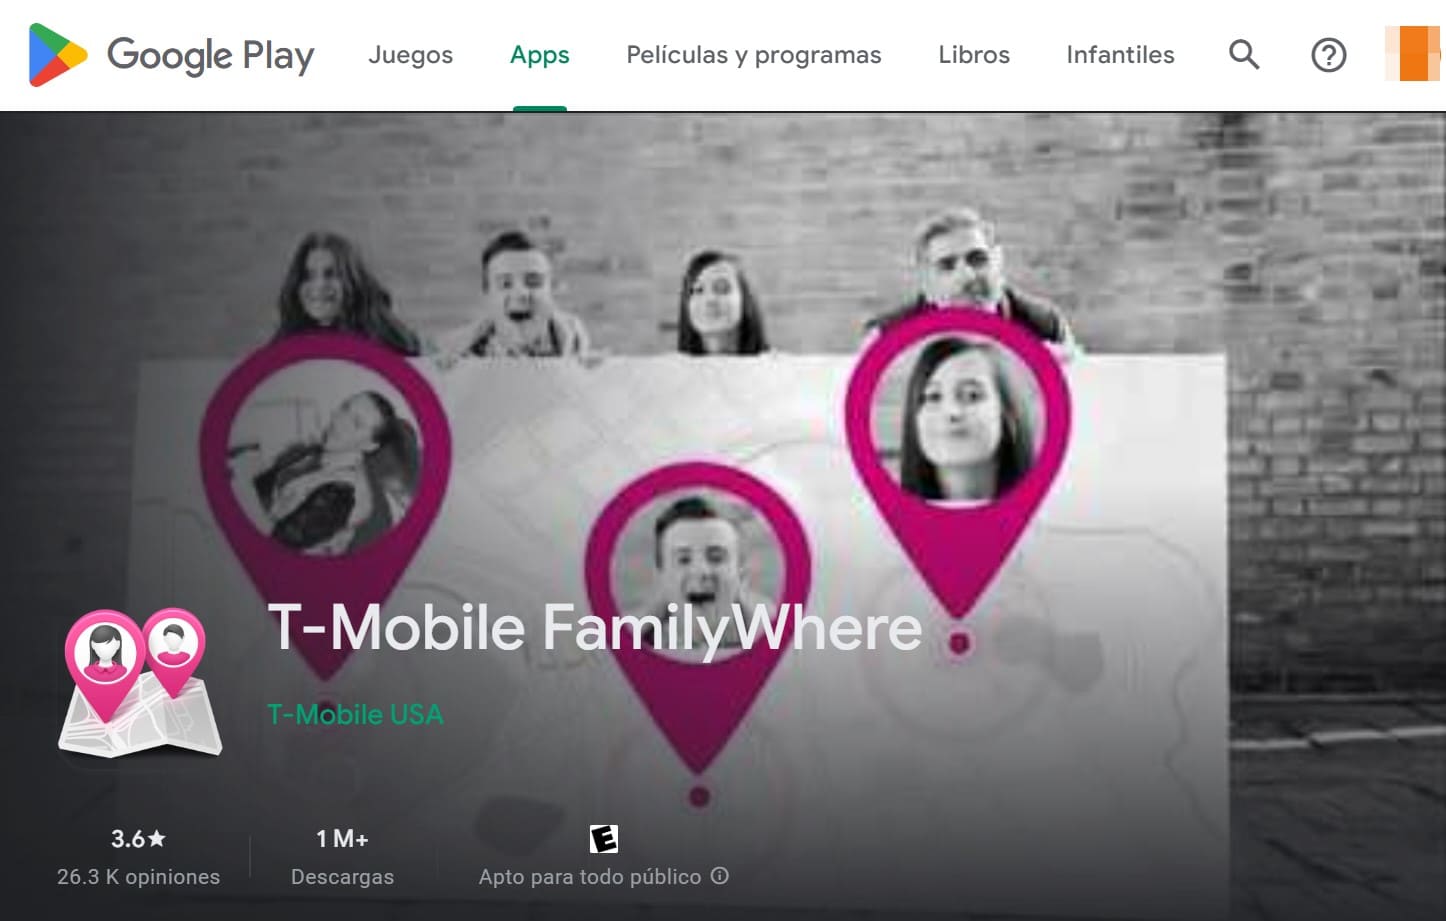 Ver la página de inicio de T-Mobile FamilyWhere en Google Play con un botón para instalarlo en tu teléfono